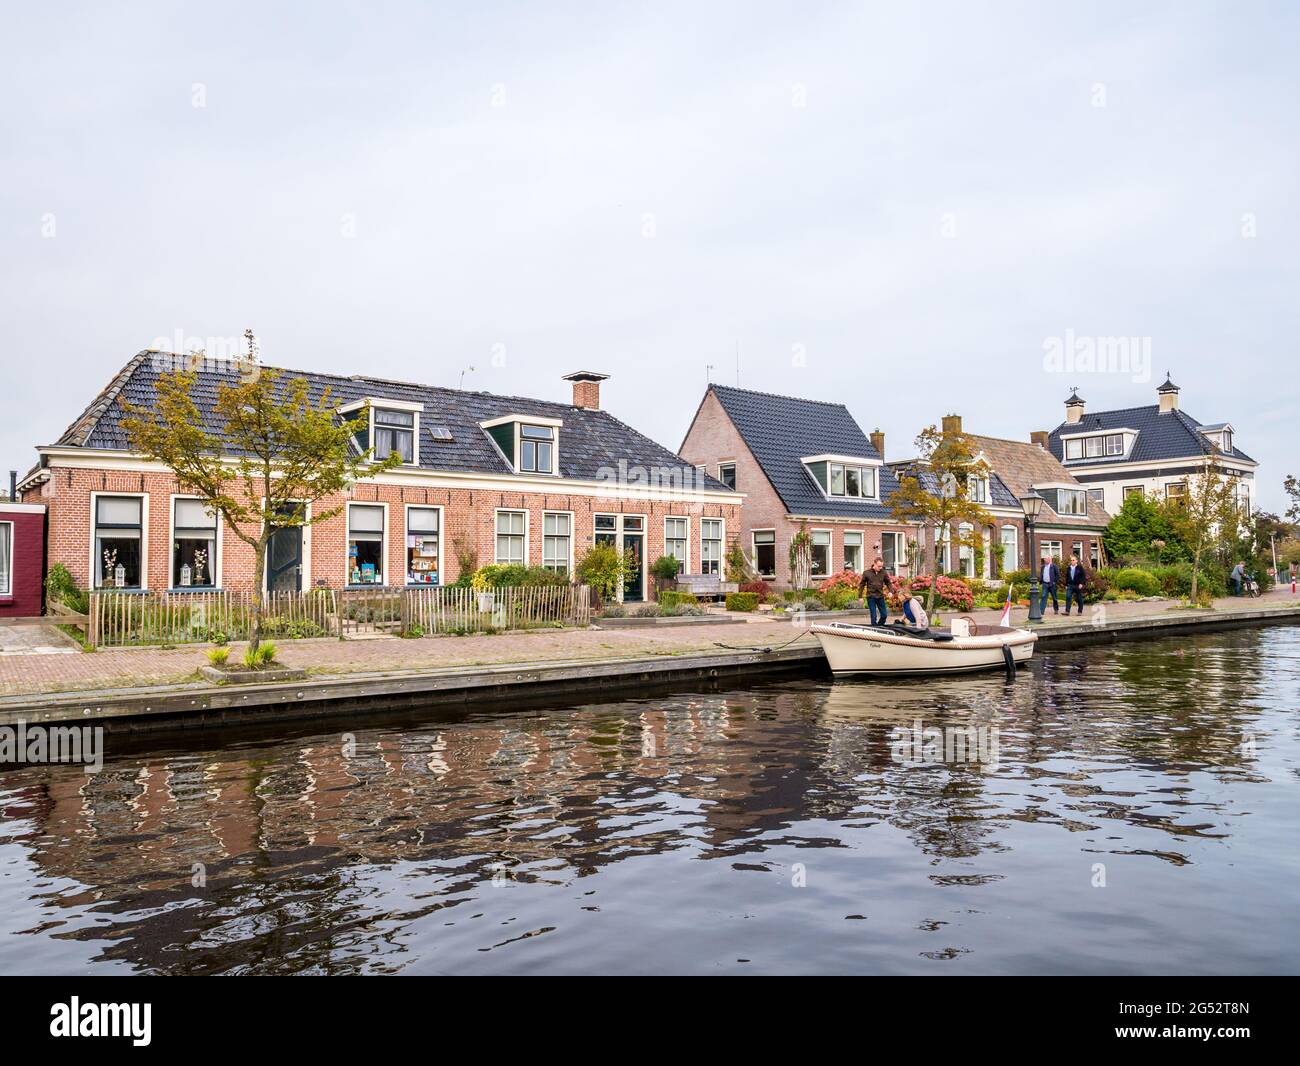 Maisons au bord du canal dans le village de WARTEN, Leeuwarden, Frise, pays-Bas Banque D'Images